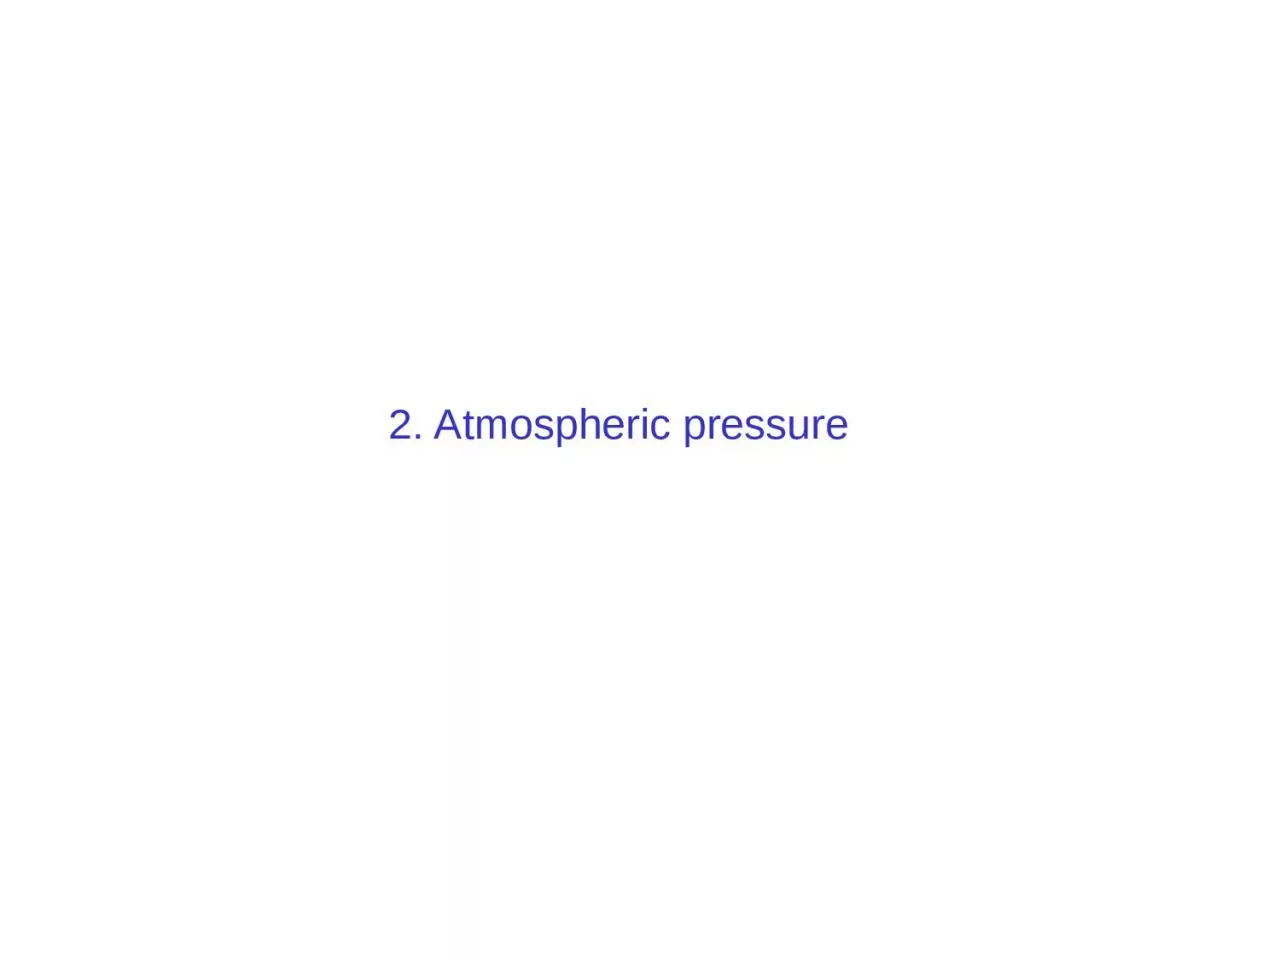 2. Atmospheric pressure Molecular view of atmospheric pressure